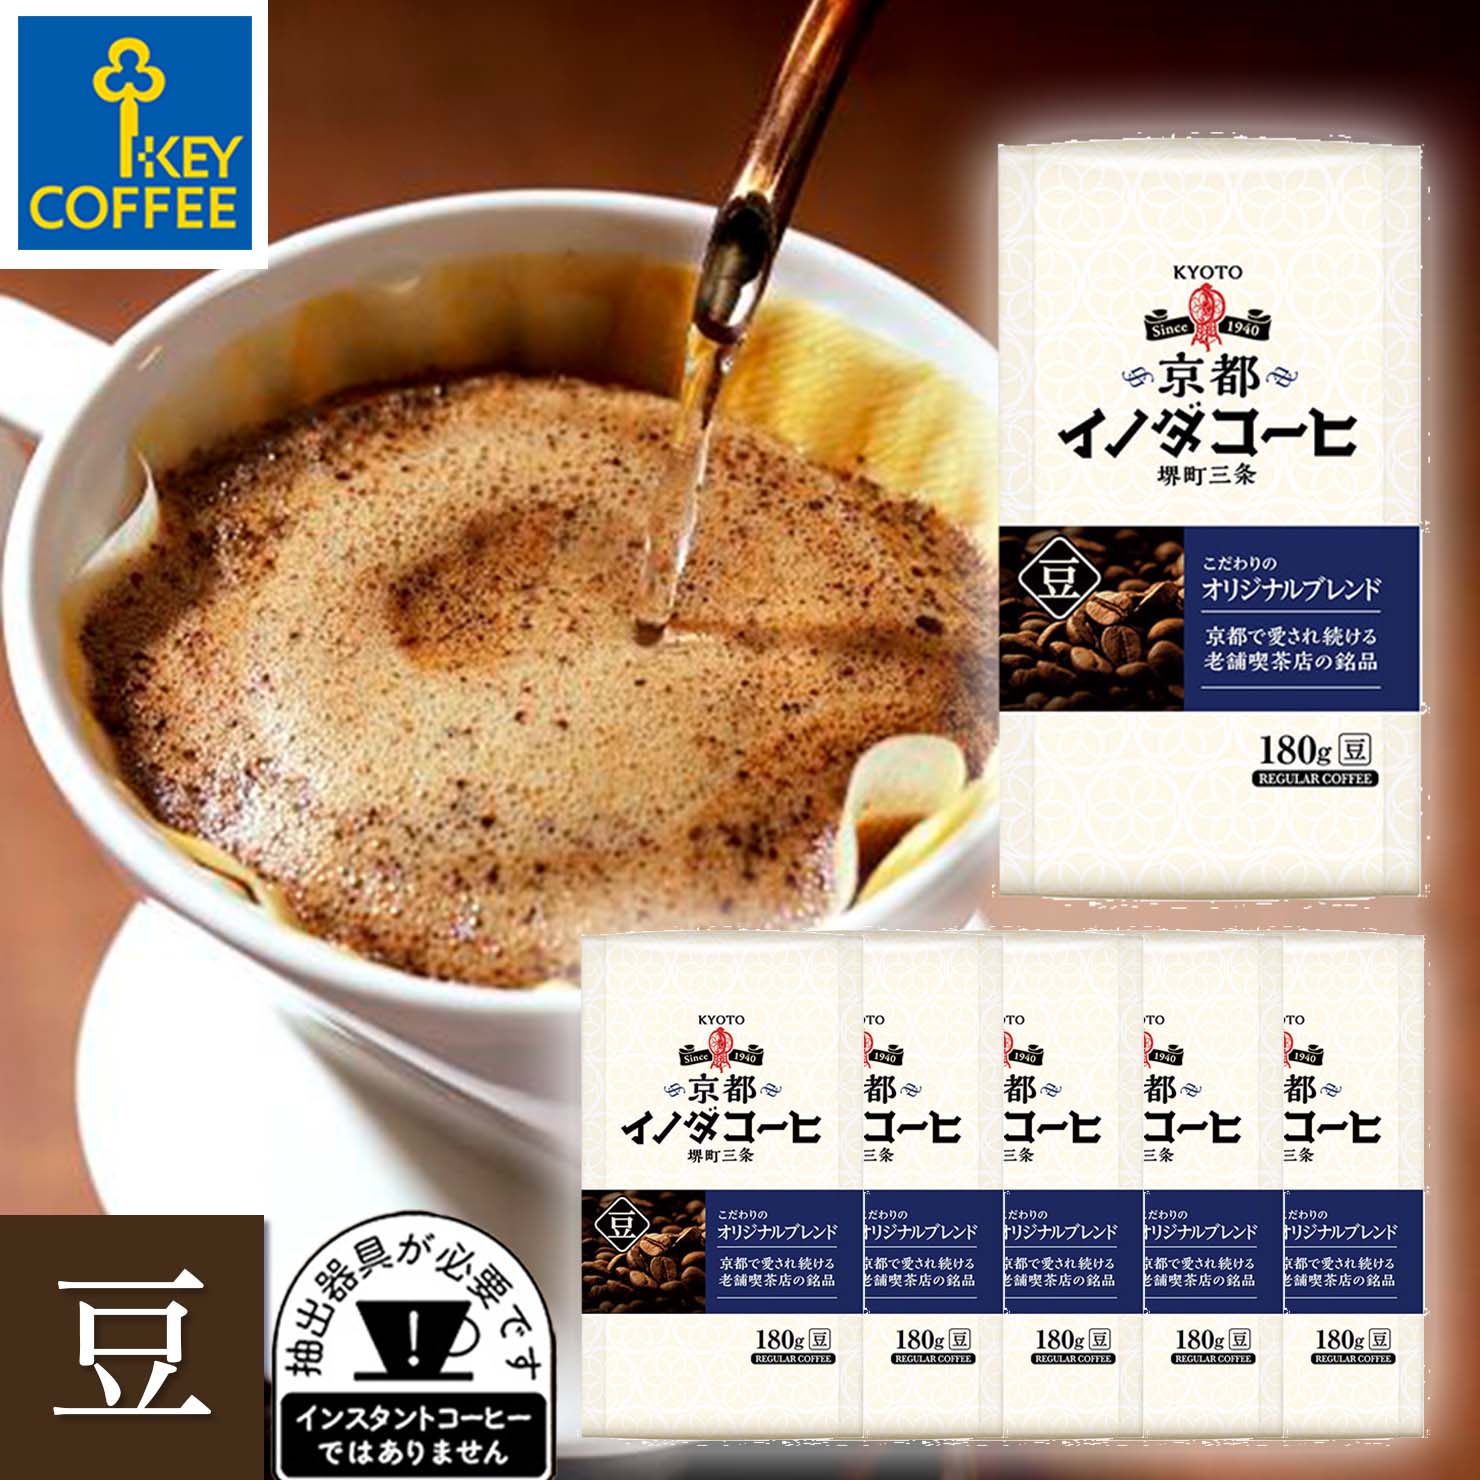 コーヒー コーヒー豆 京都イノダコーヒ こだわりのオリジナルブレンド 豆 180g×6袋 ブレンドコーヒー  キーコーヒー keycoffee  珈琲 送料無料